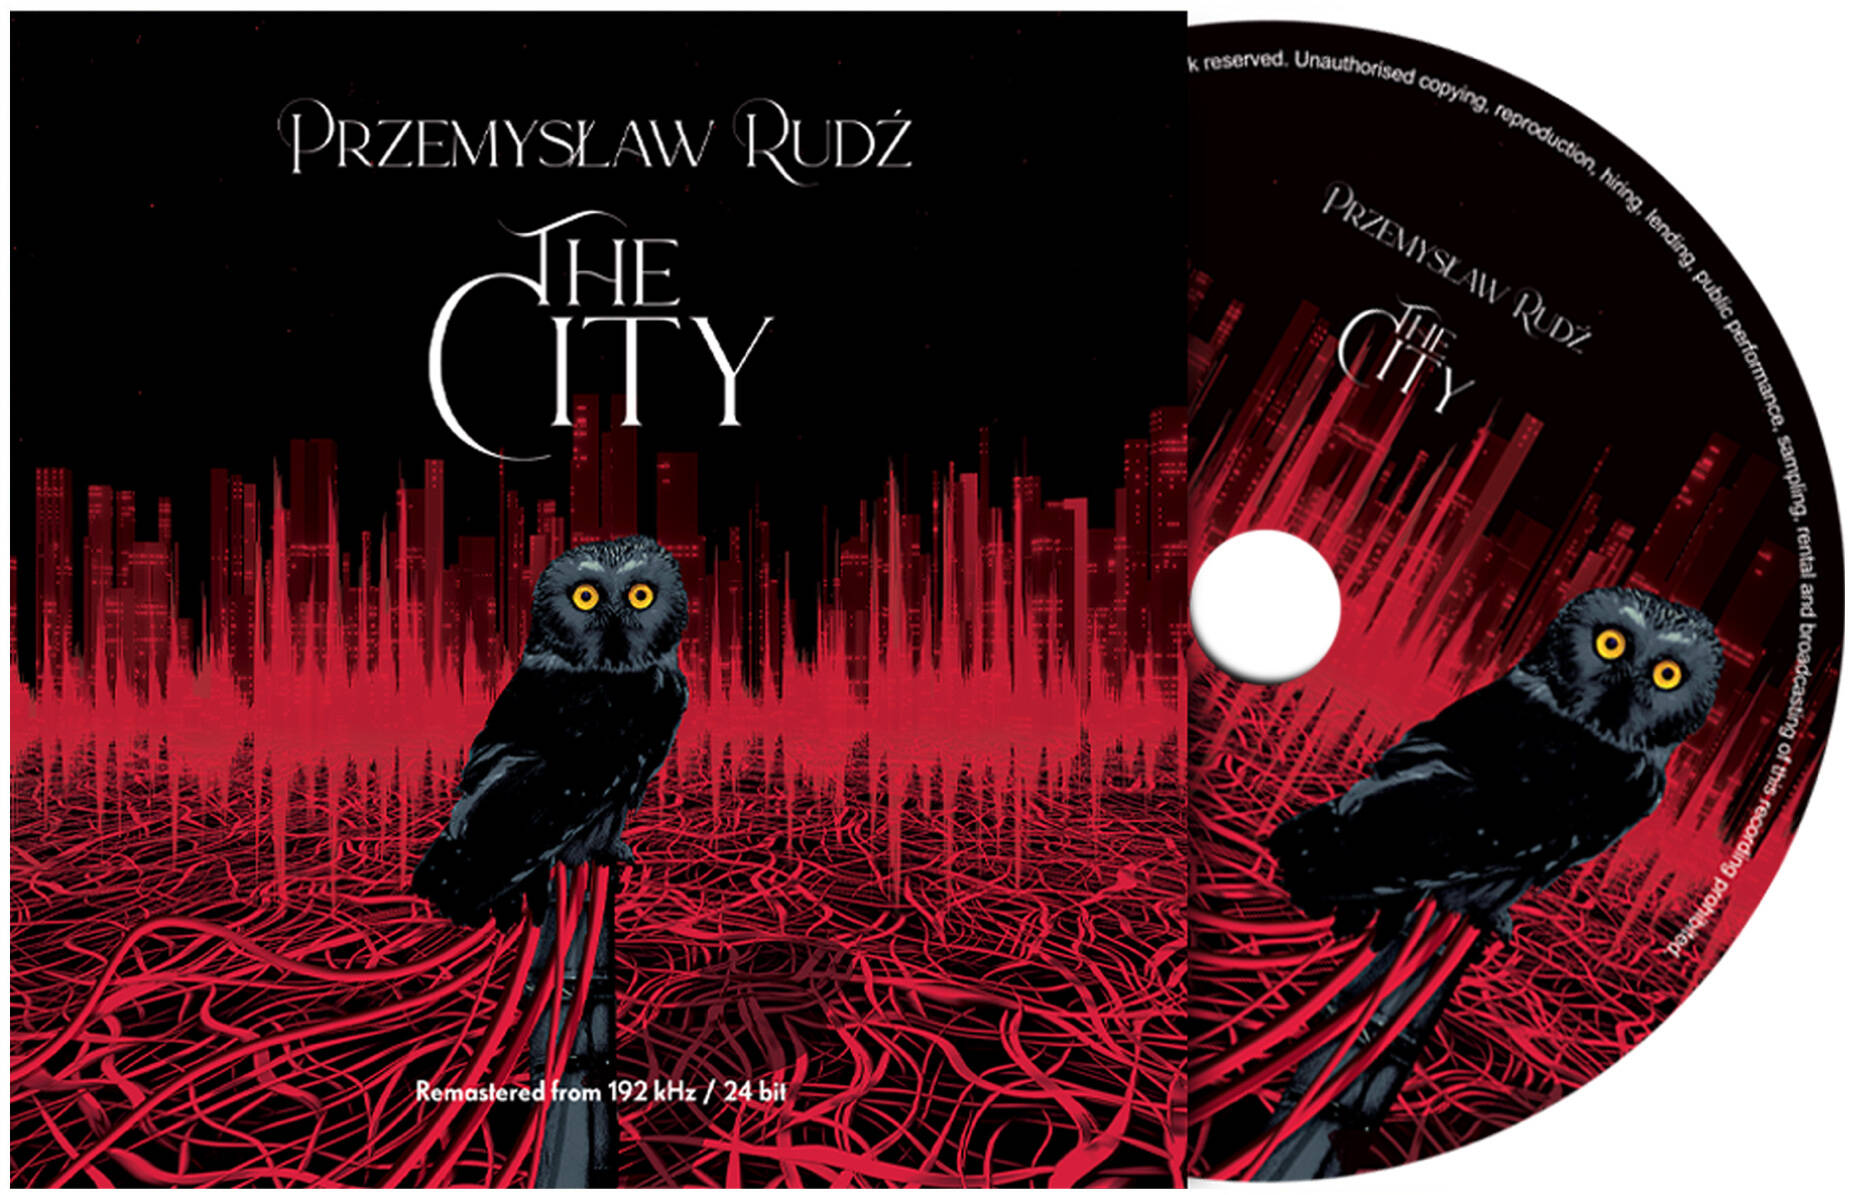 Przemysław Rudź - The City CD by Ministerstwo Dźwięku